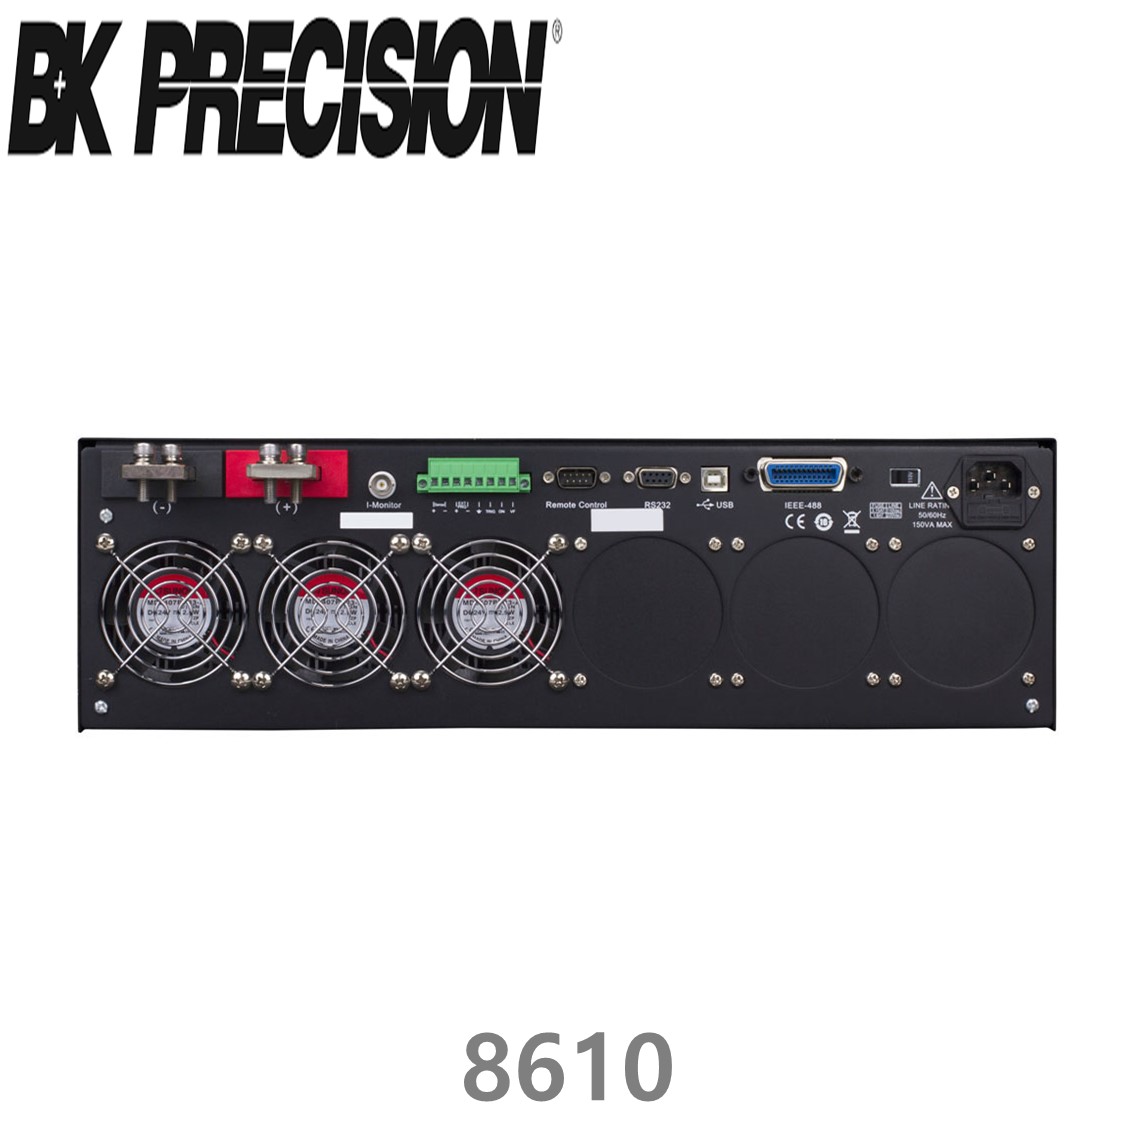 [ BK PRECISION ] BK 8610, 750W Programmable DC Electronic Load, 프로그래머블 DC 전자로드, B&K 8610